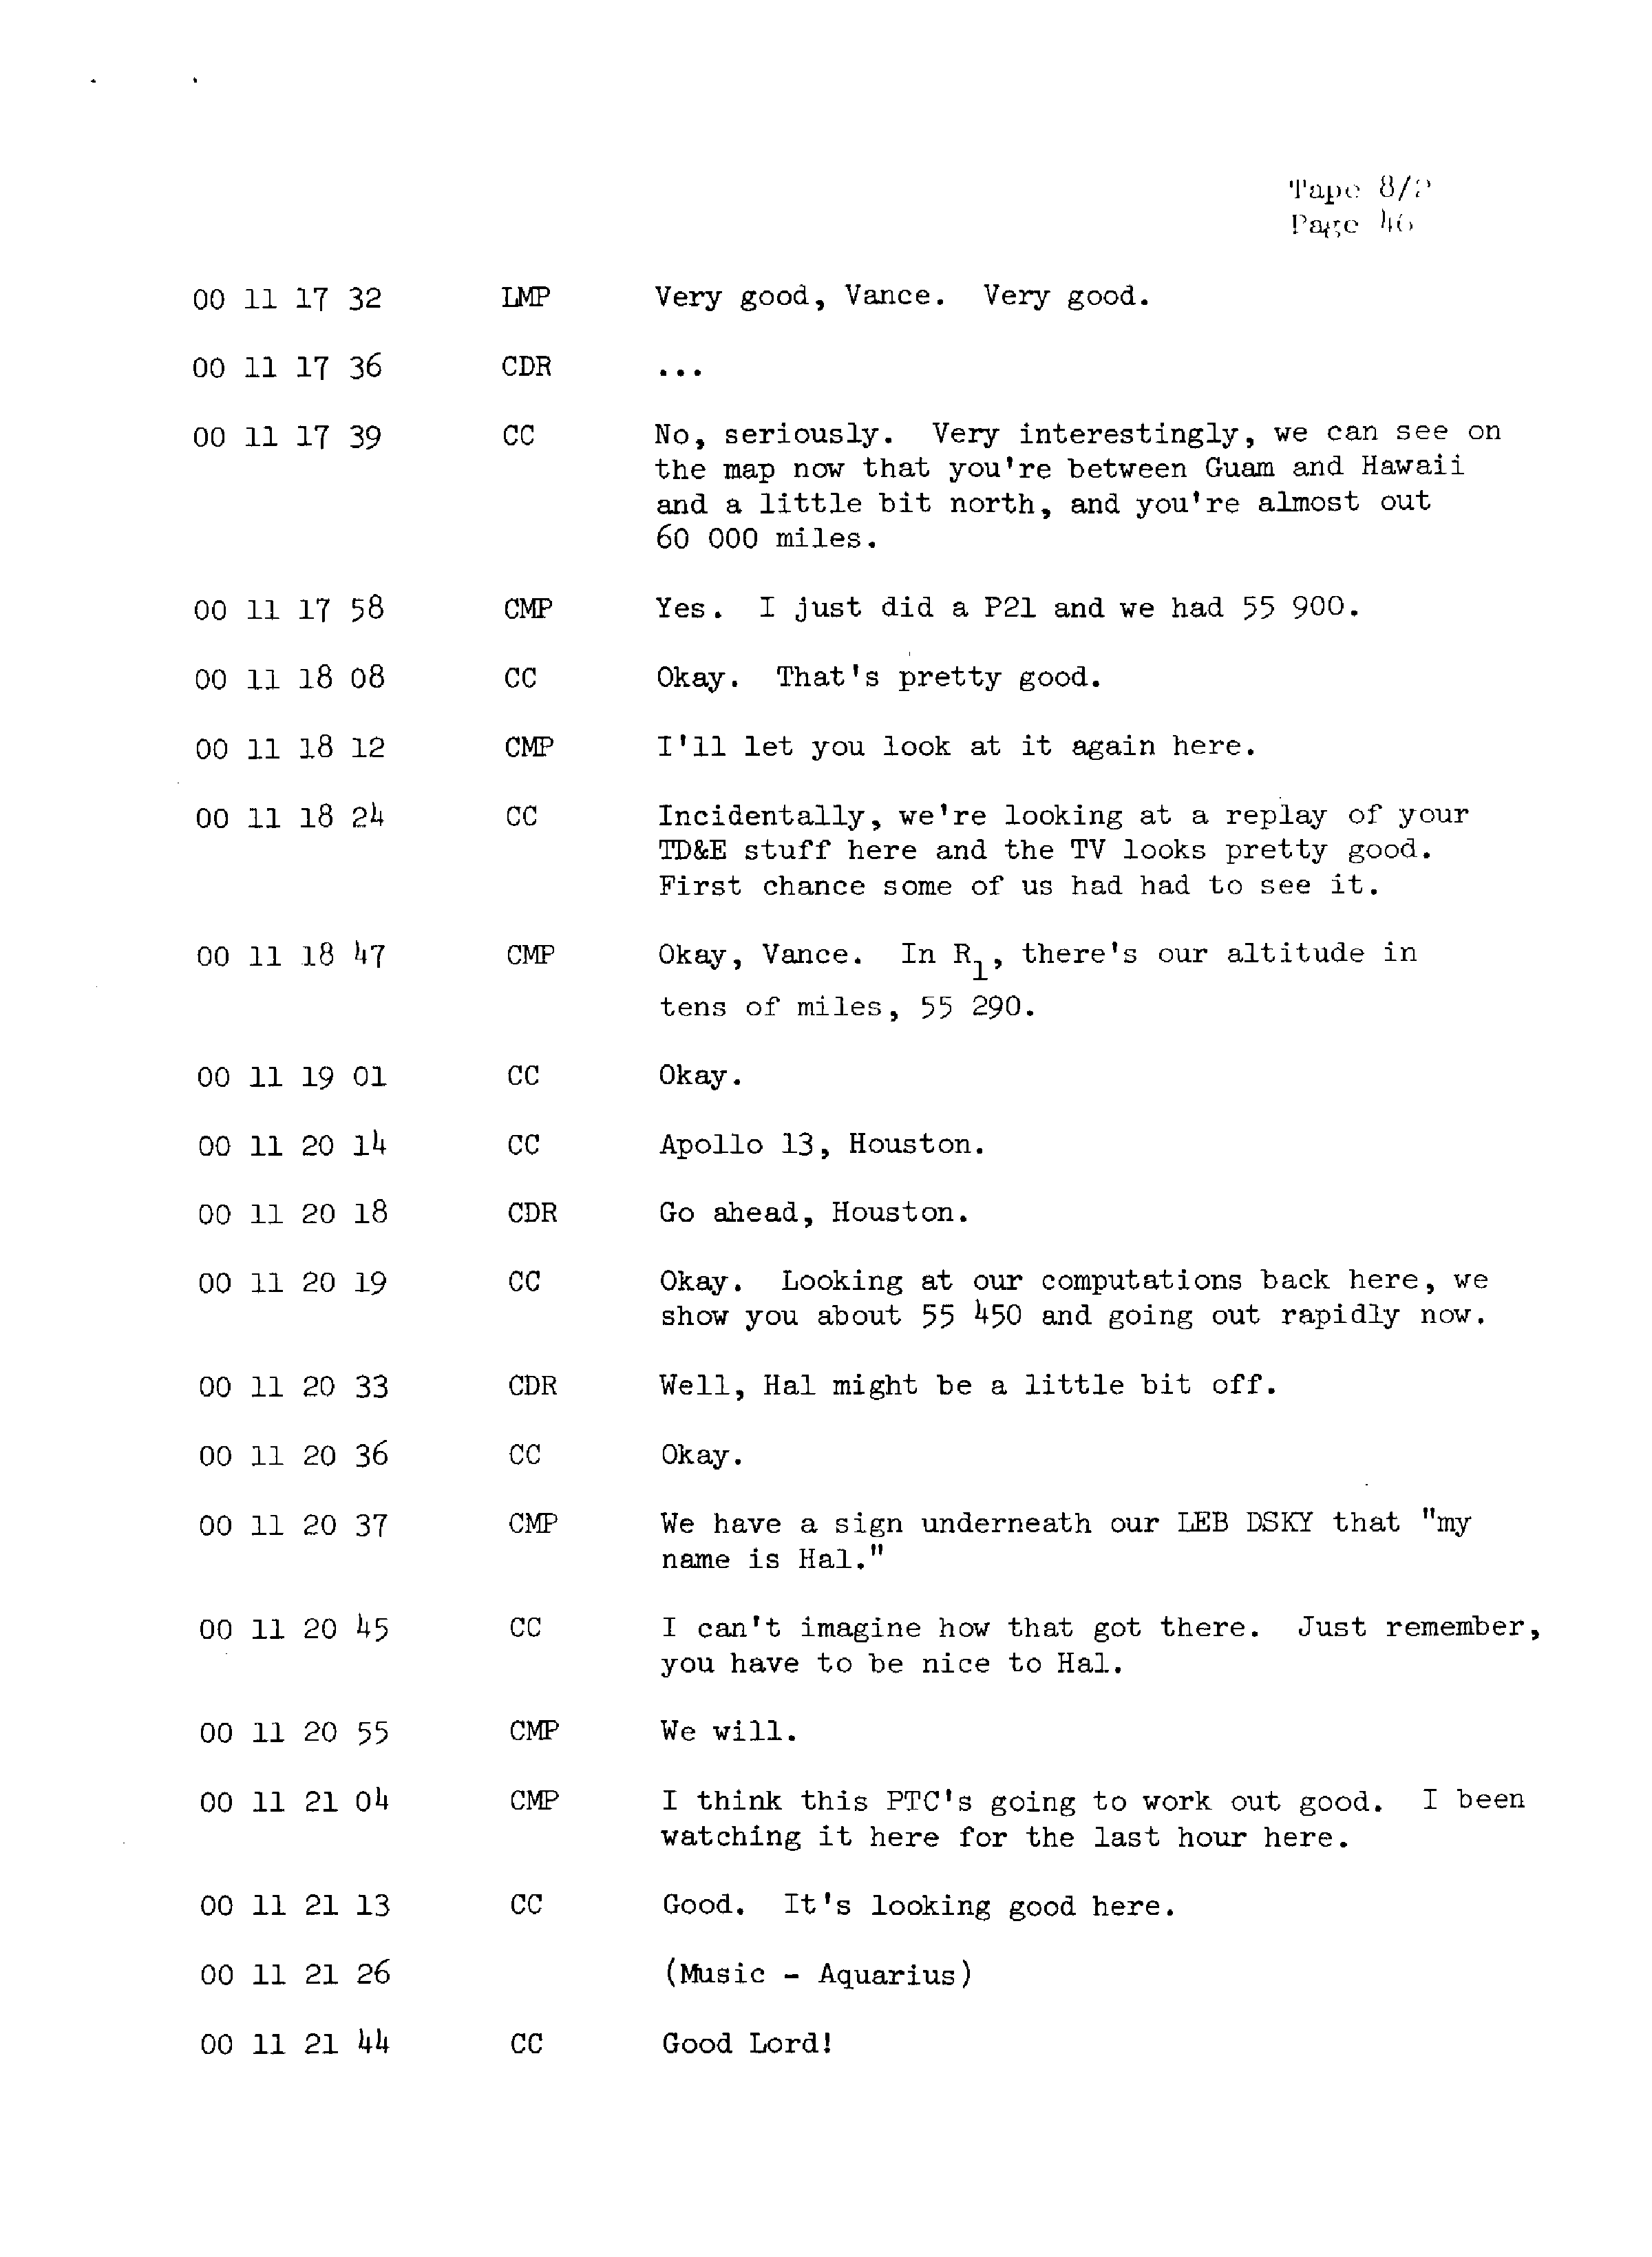 Page 53 of Apollo 13’s original transcript